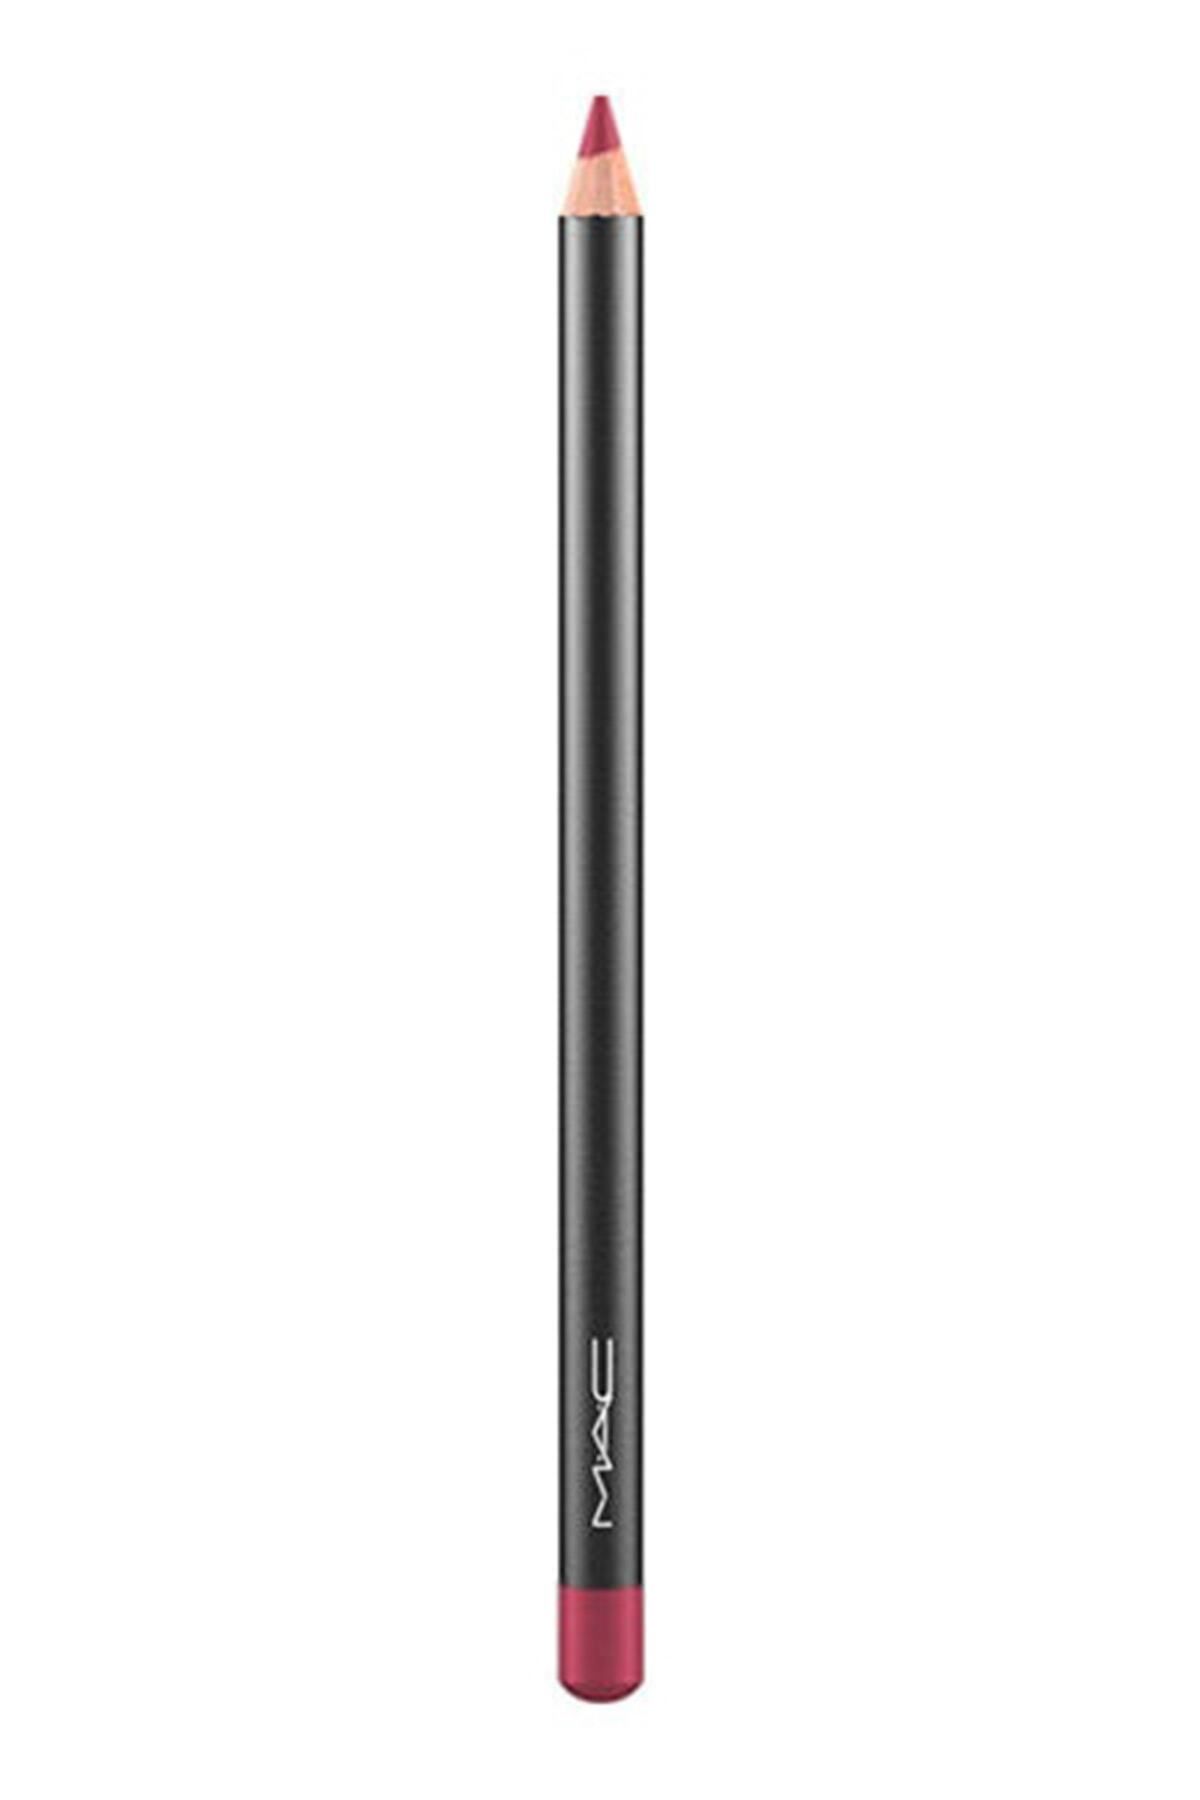 Mac Dudak Kalemi - Lip Pencil  Beet 1.45 g 773602430024